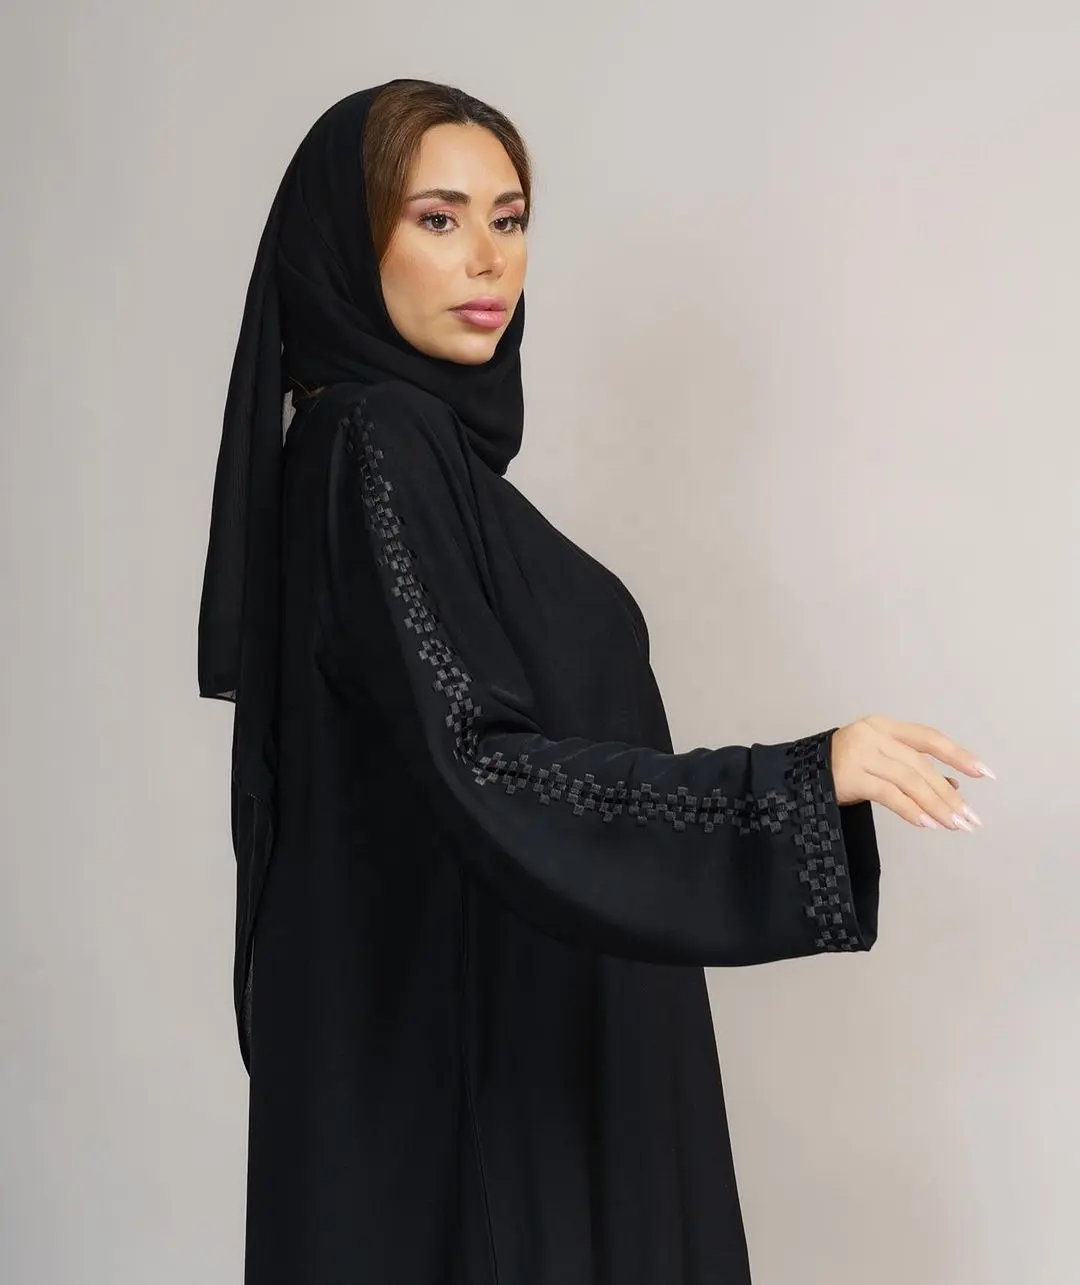 बिकोमैफोर्ट काले काले काले रंग की बुनाई पैटर्न अबाया दुबाई महिला मुस्लिम पोशाक अबाया महिला